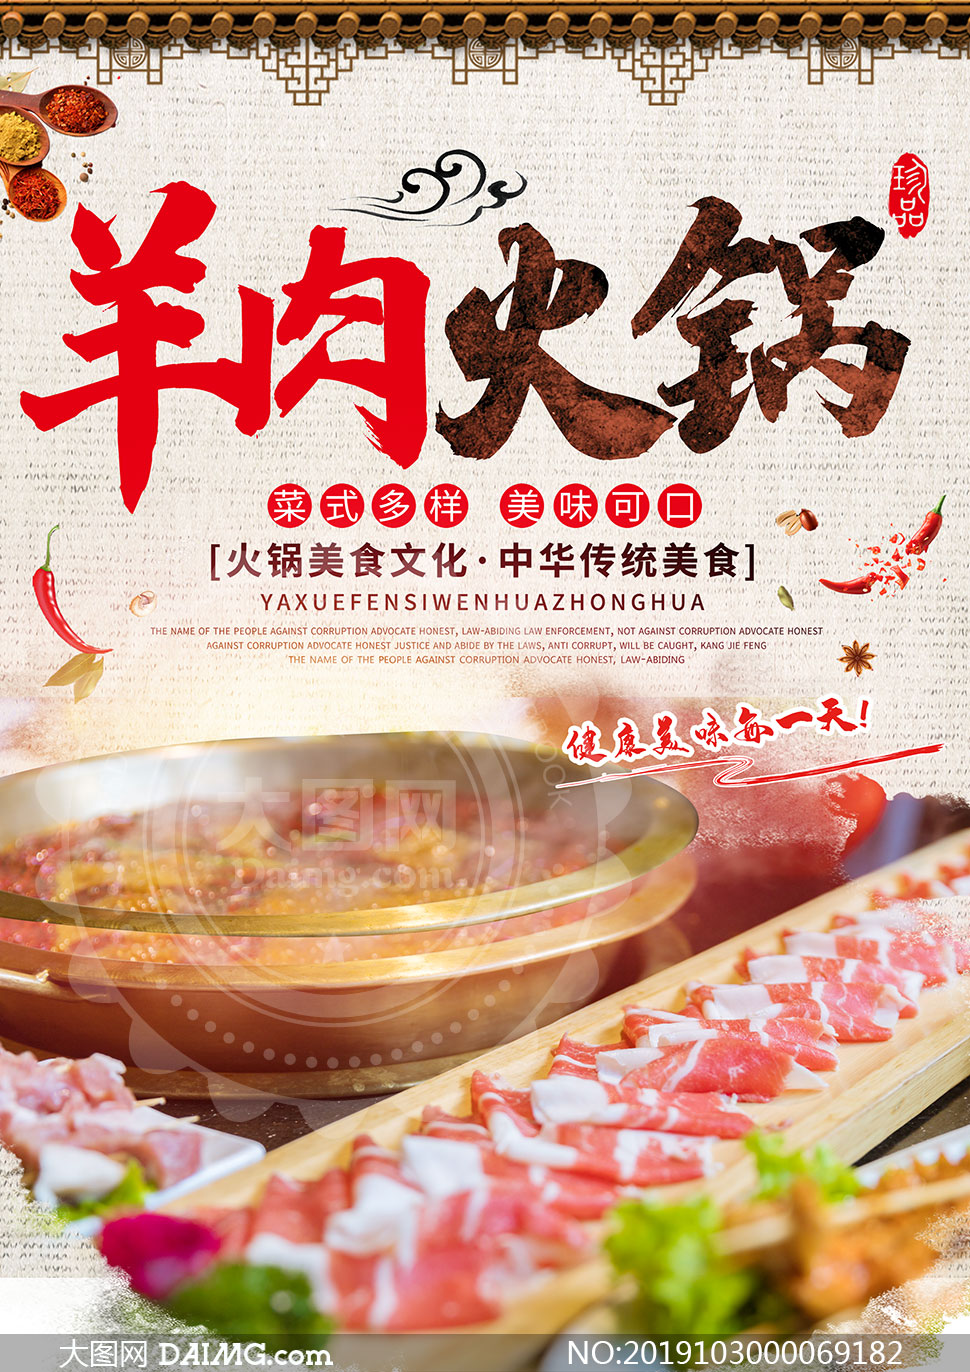 羊肉火锅美食促销海报设计psd素材